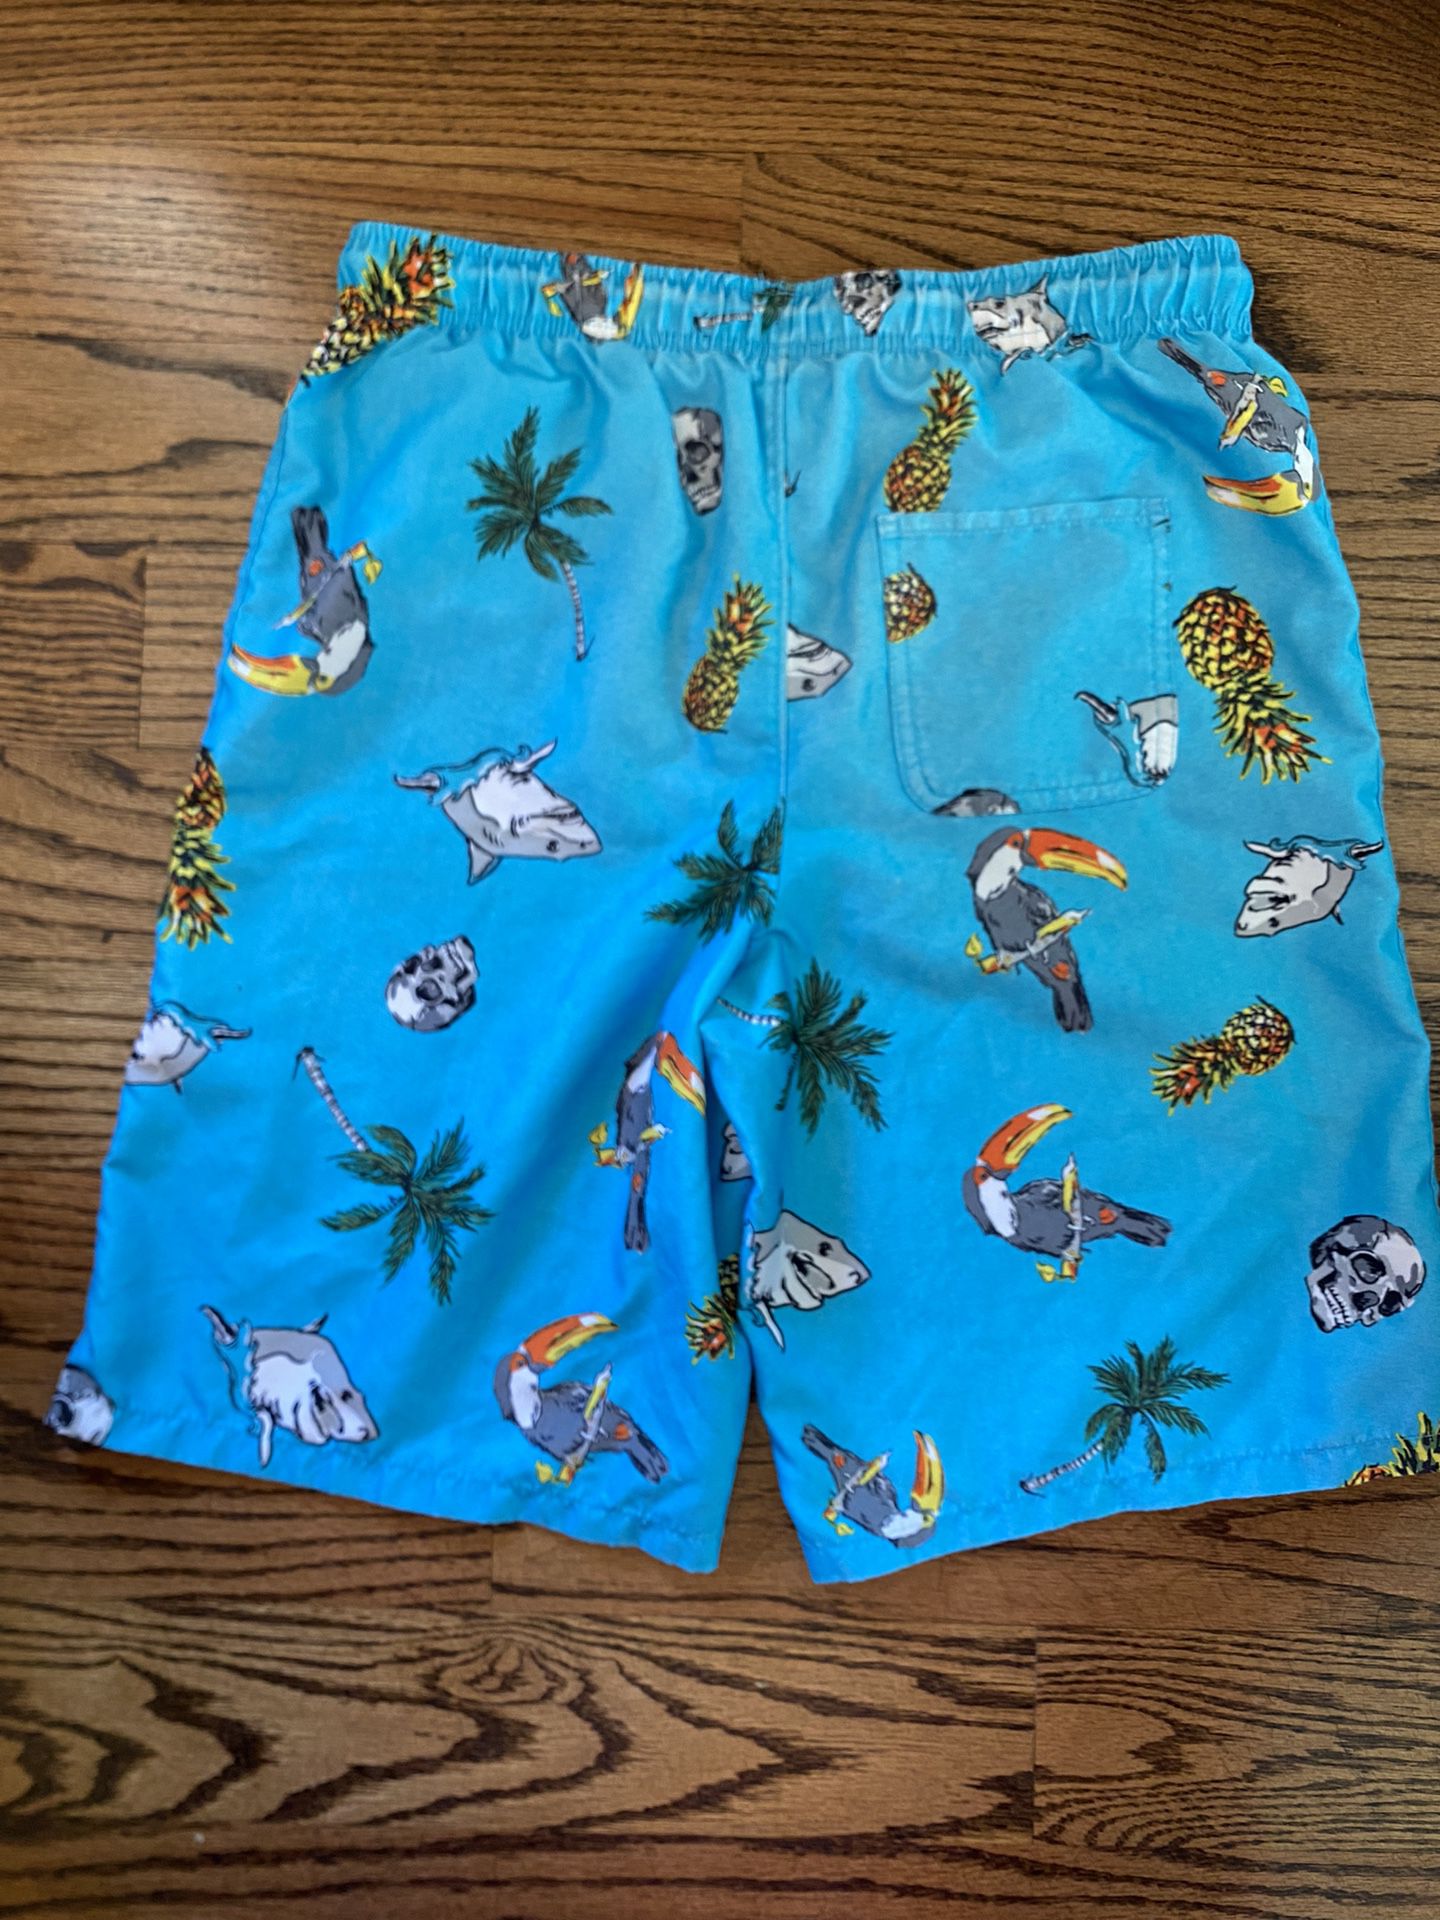 Boys swim trunks / Size  XL 14-16